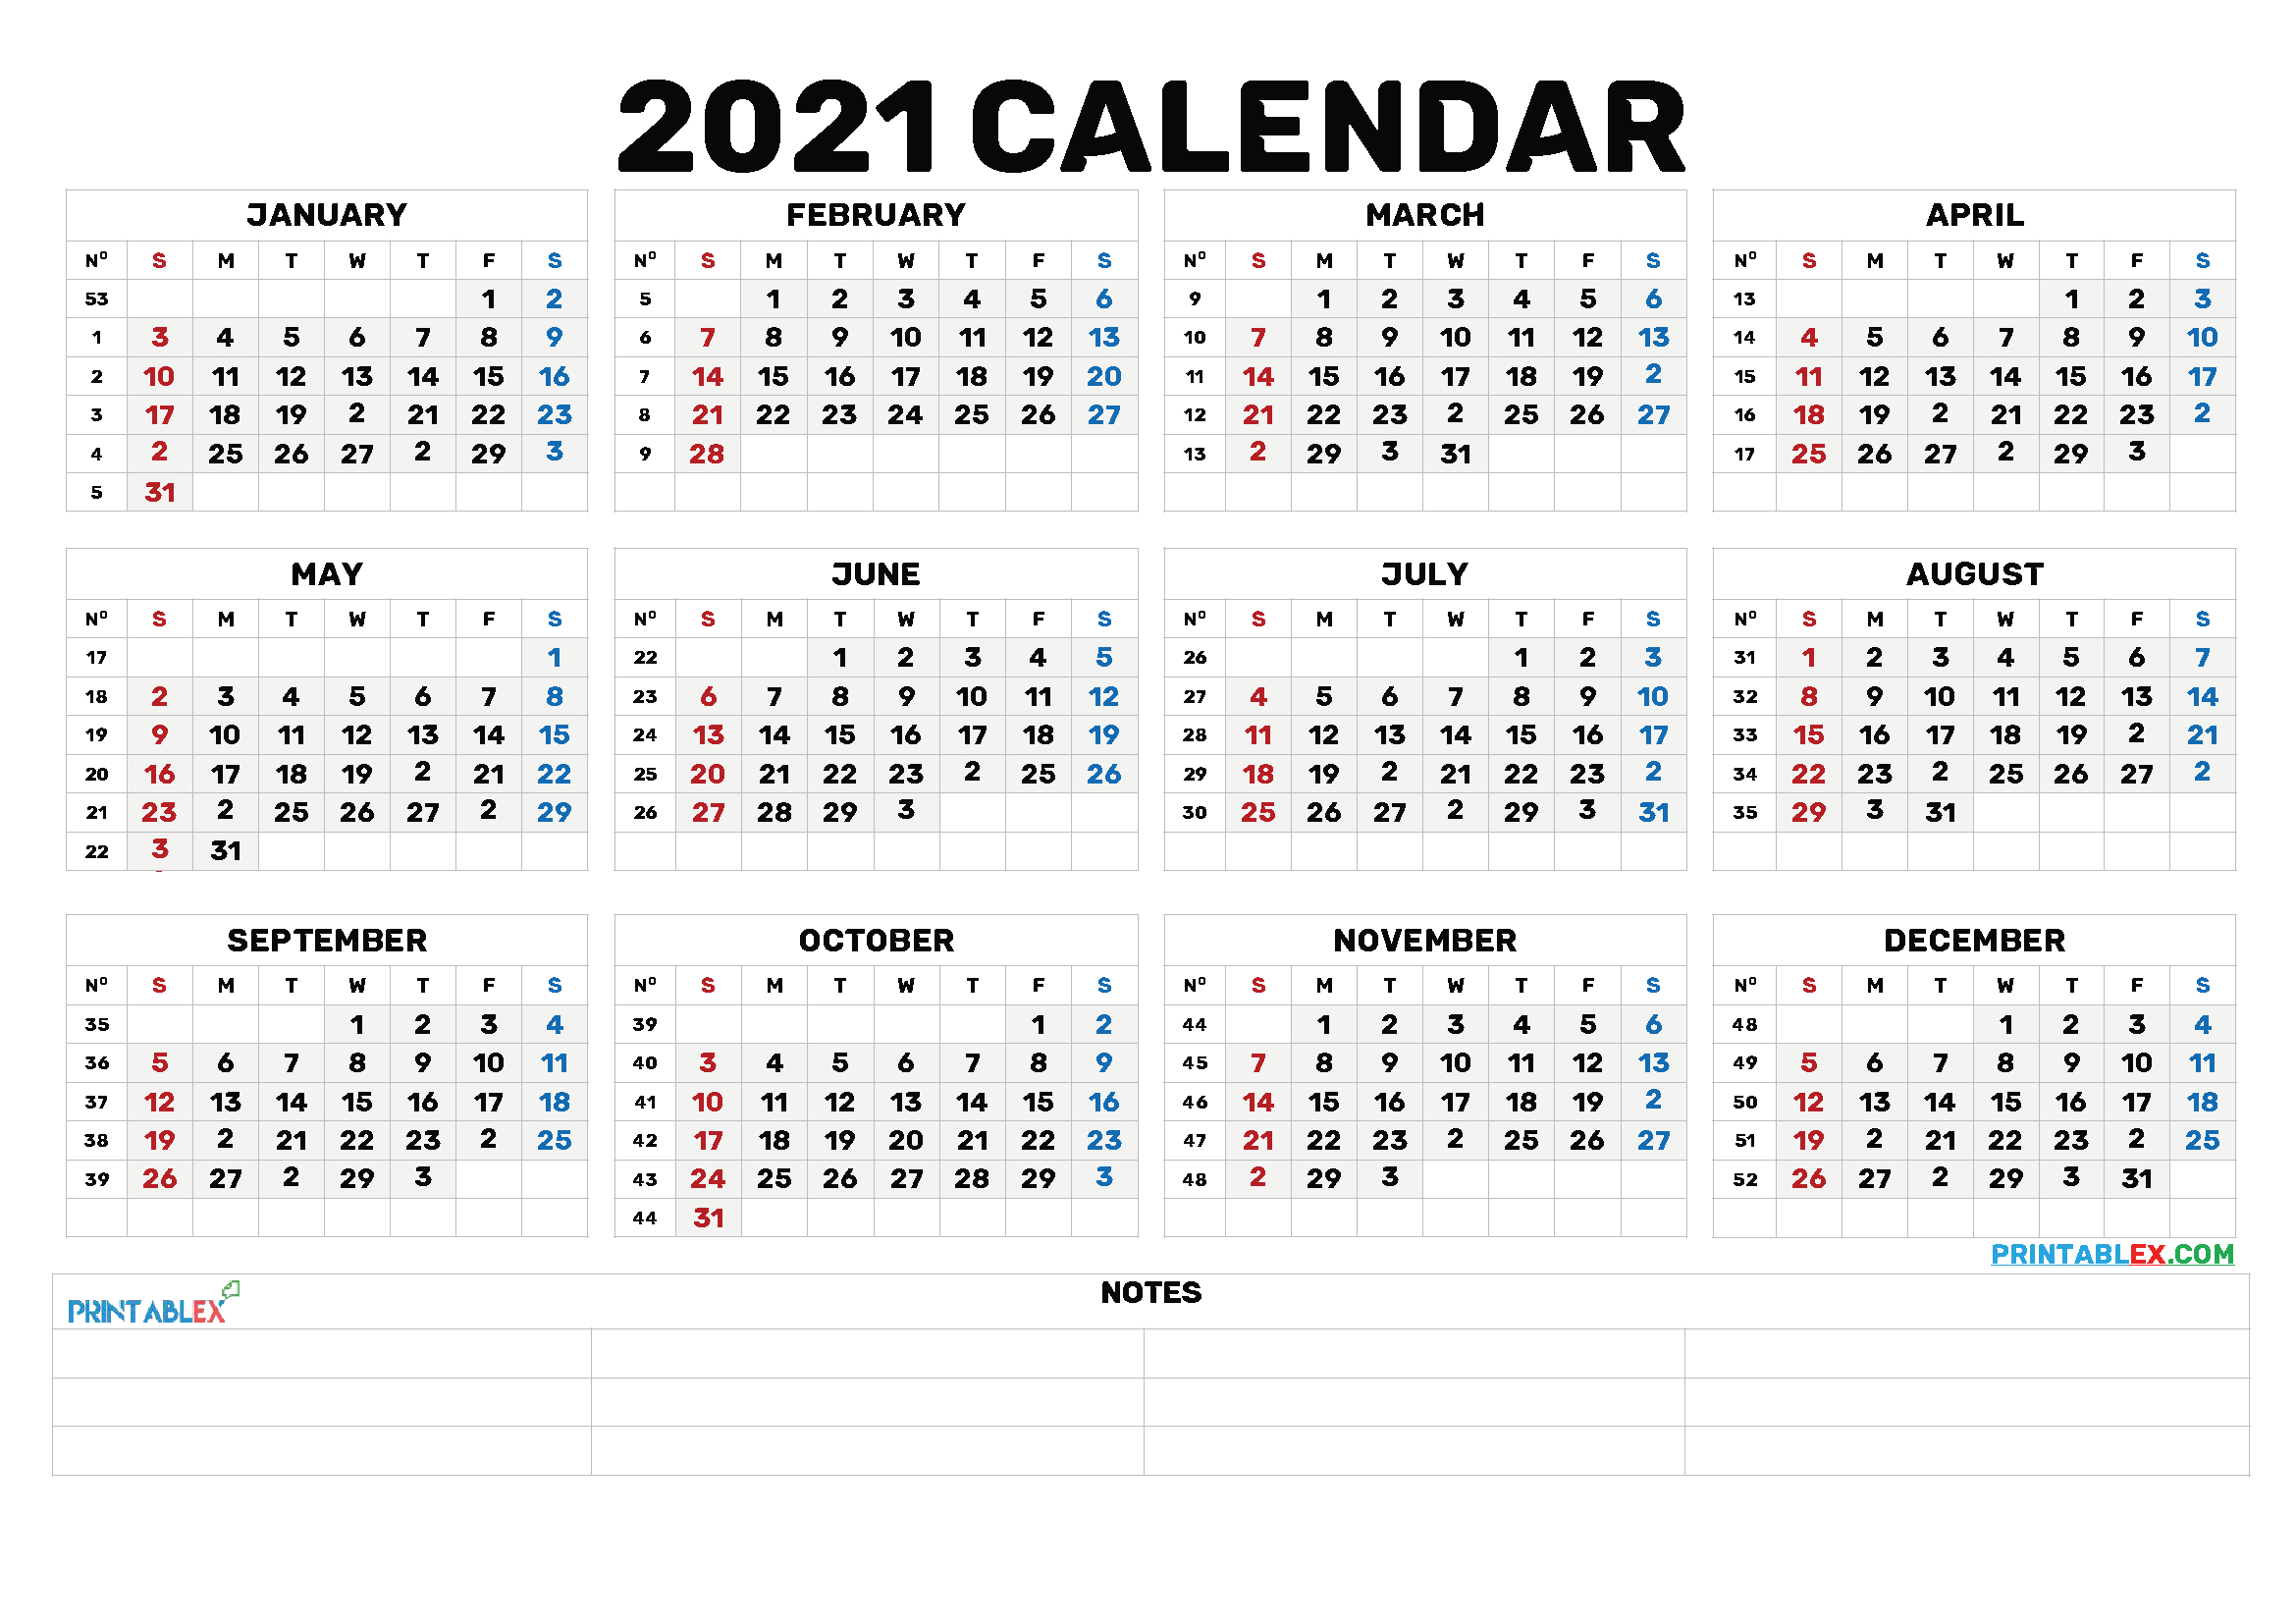 2021 Calendar With Week Number Printable Free : 2021